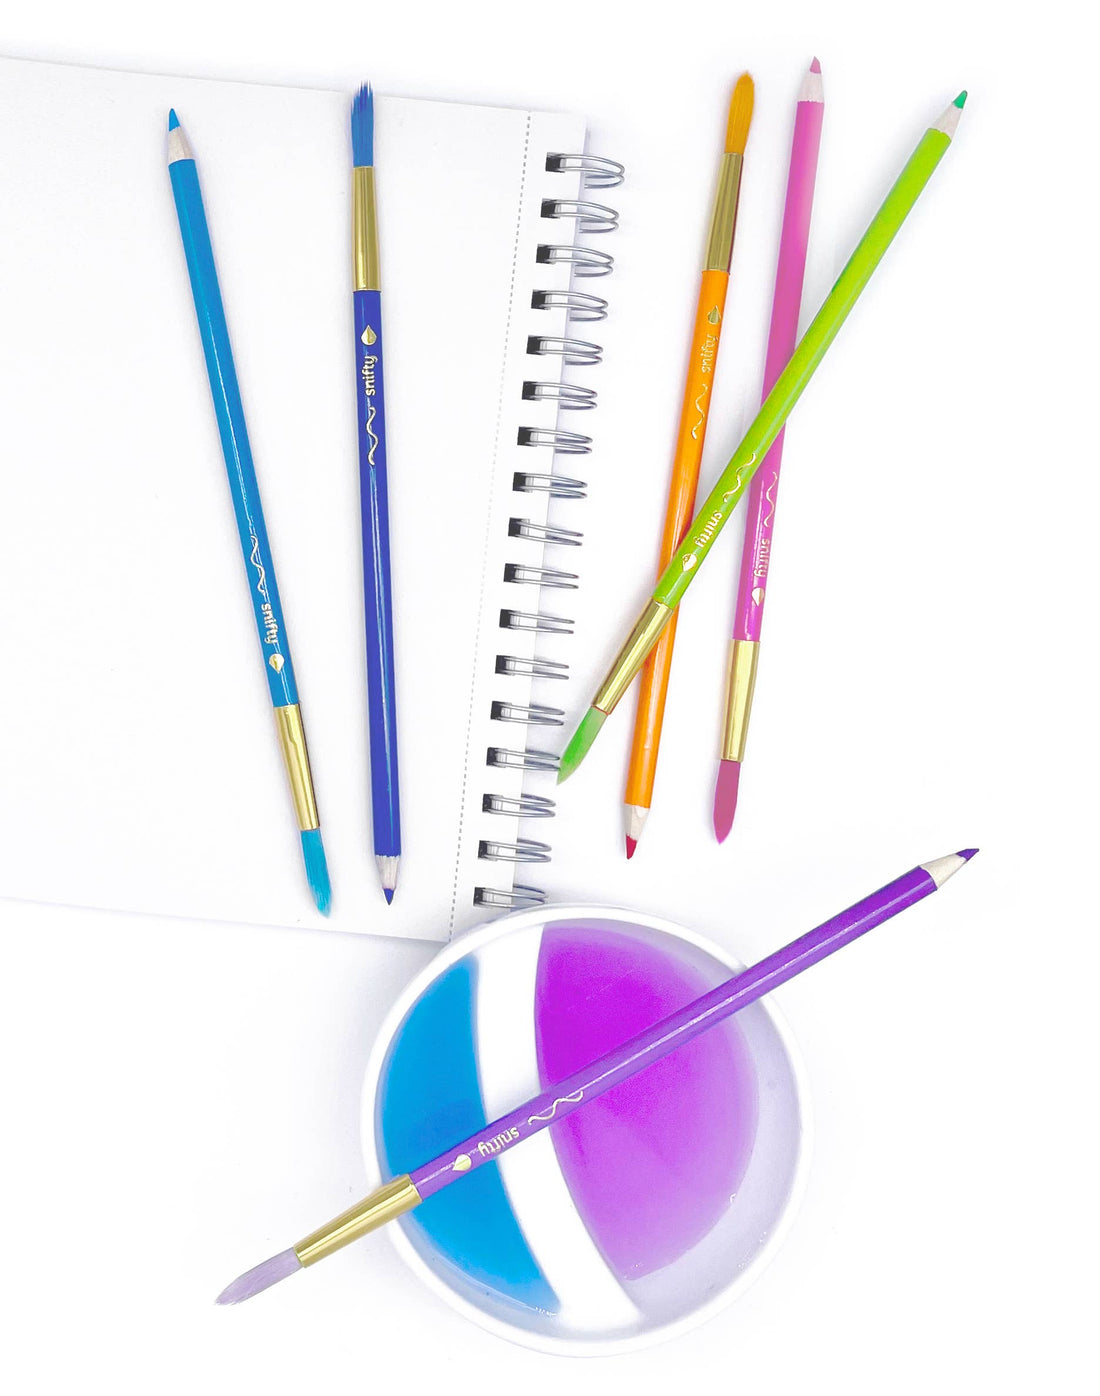 PASTEL COLORBRUSH - watercolor 
pencil/paintbrush